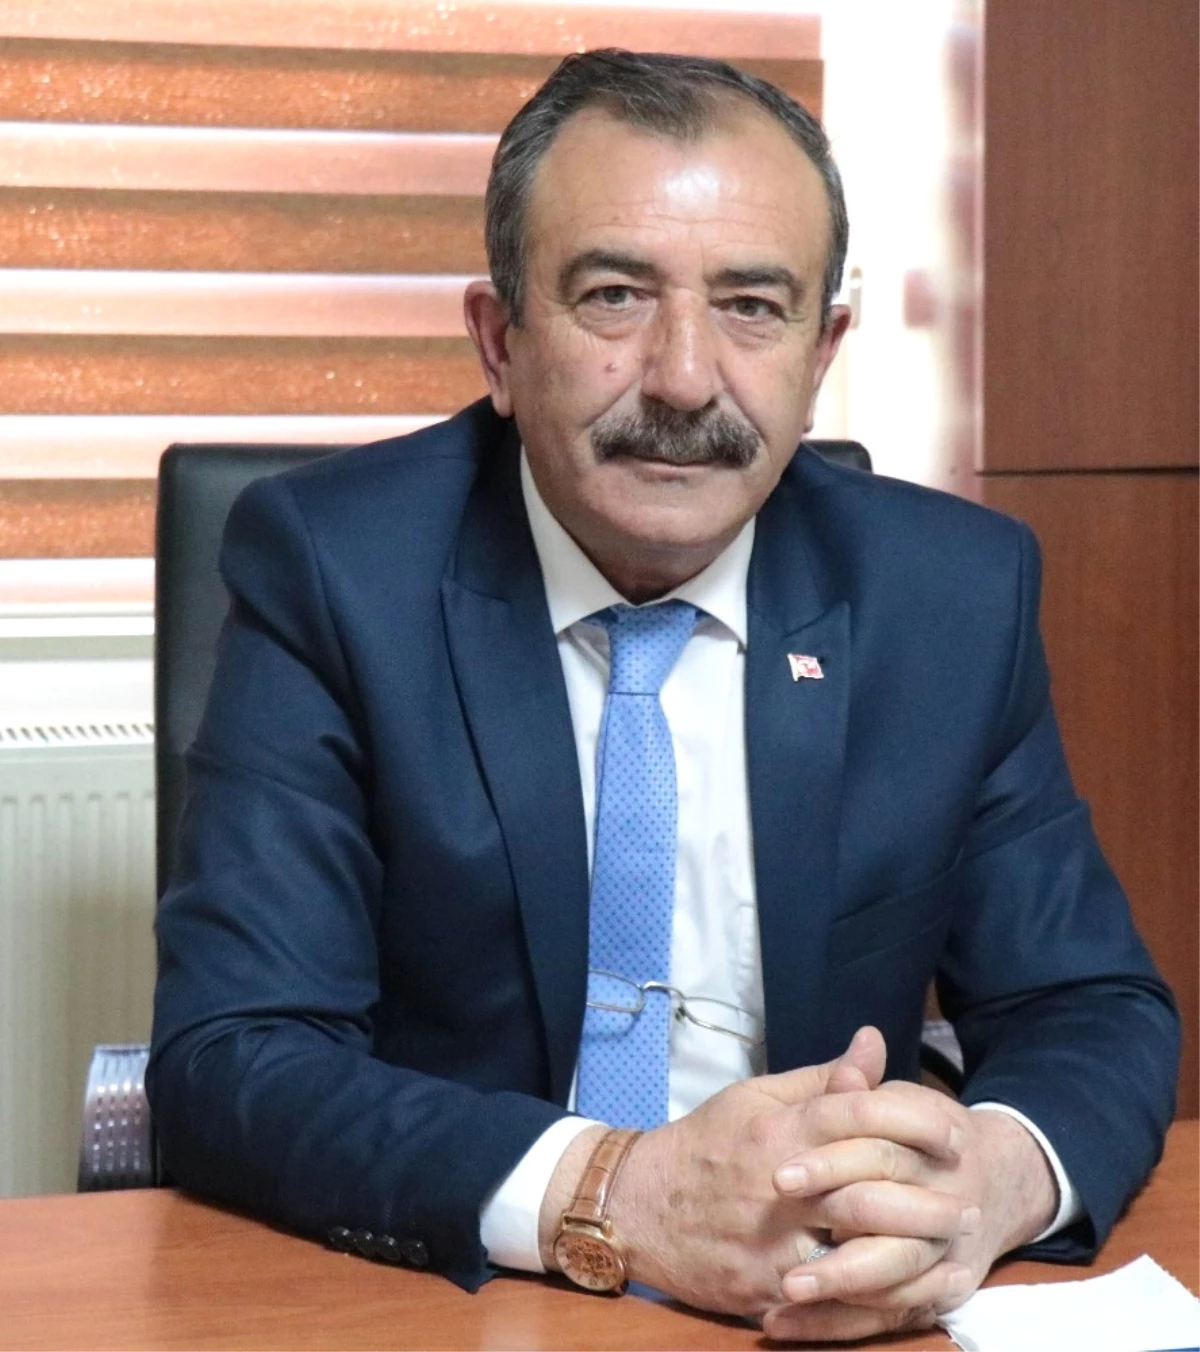 Kırşehirspor Eski Başkanı Berat Bıçakcı: "Belediyenin Kurumsal Kimliği Şampiyonluk Getirdi"